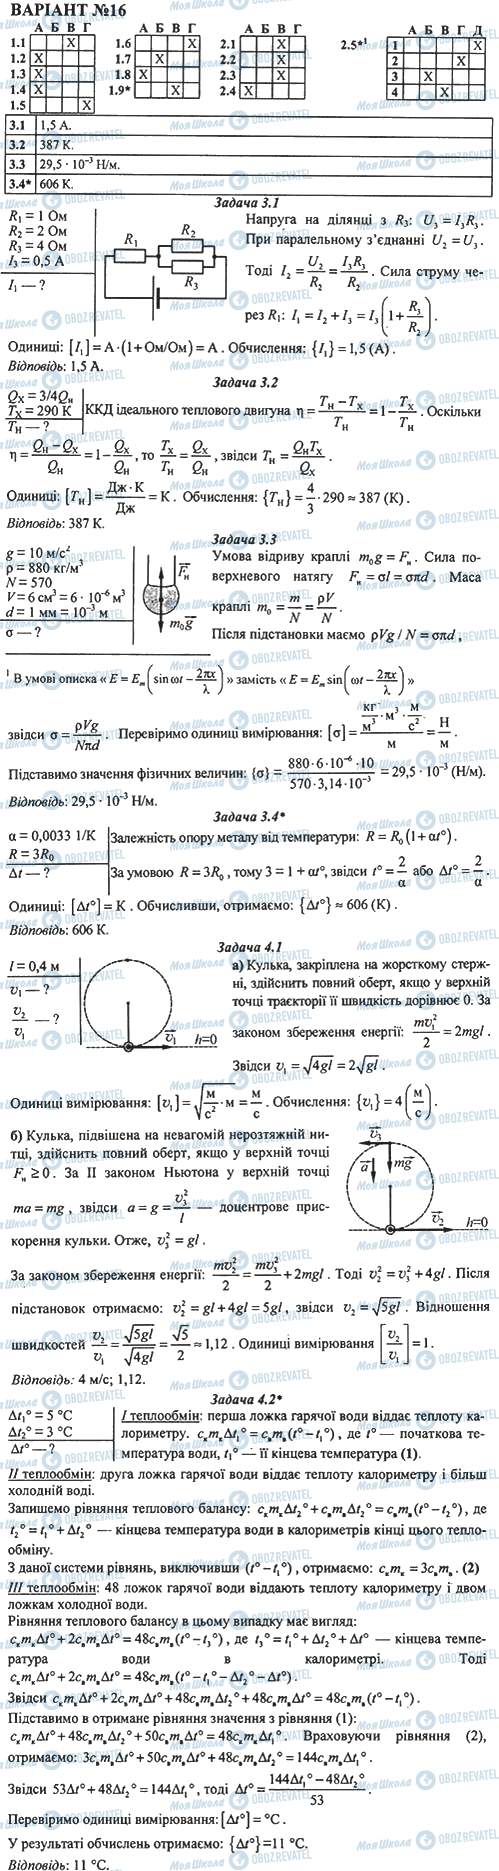 ДПА Физика 11 класс страница 16